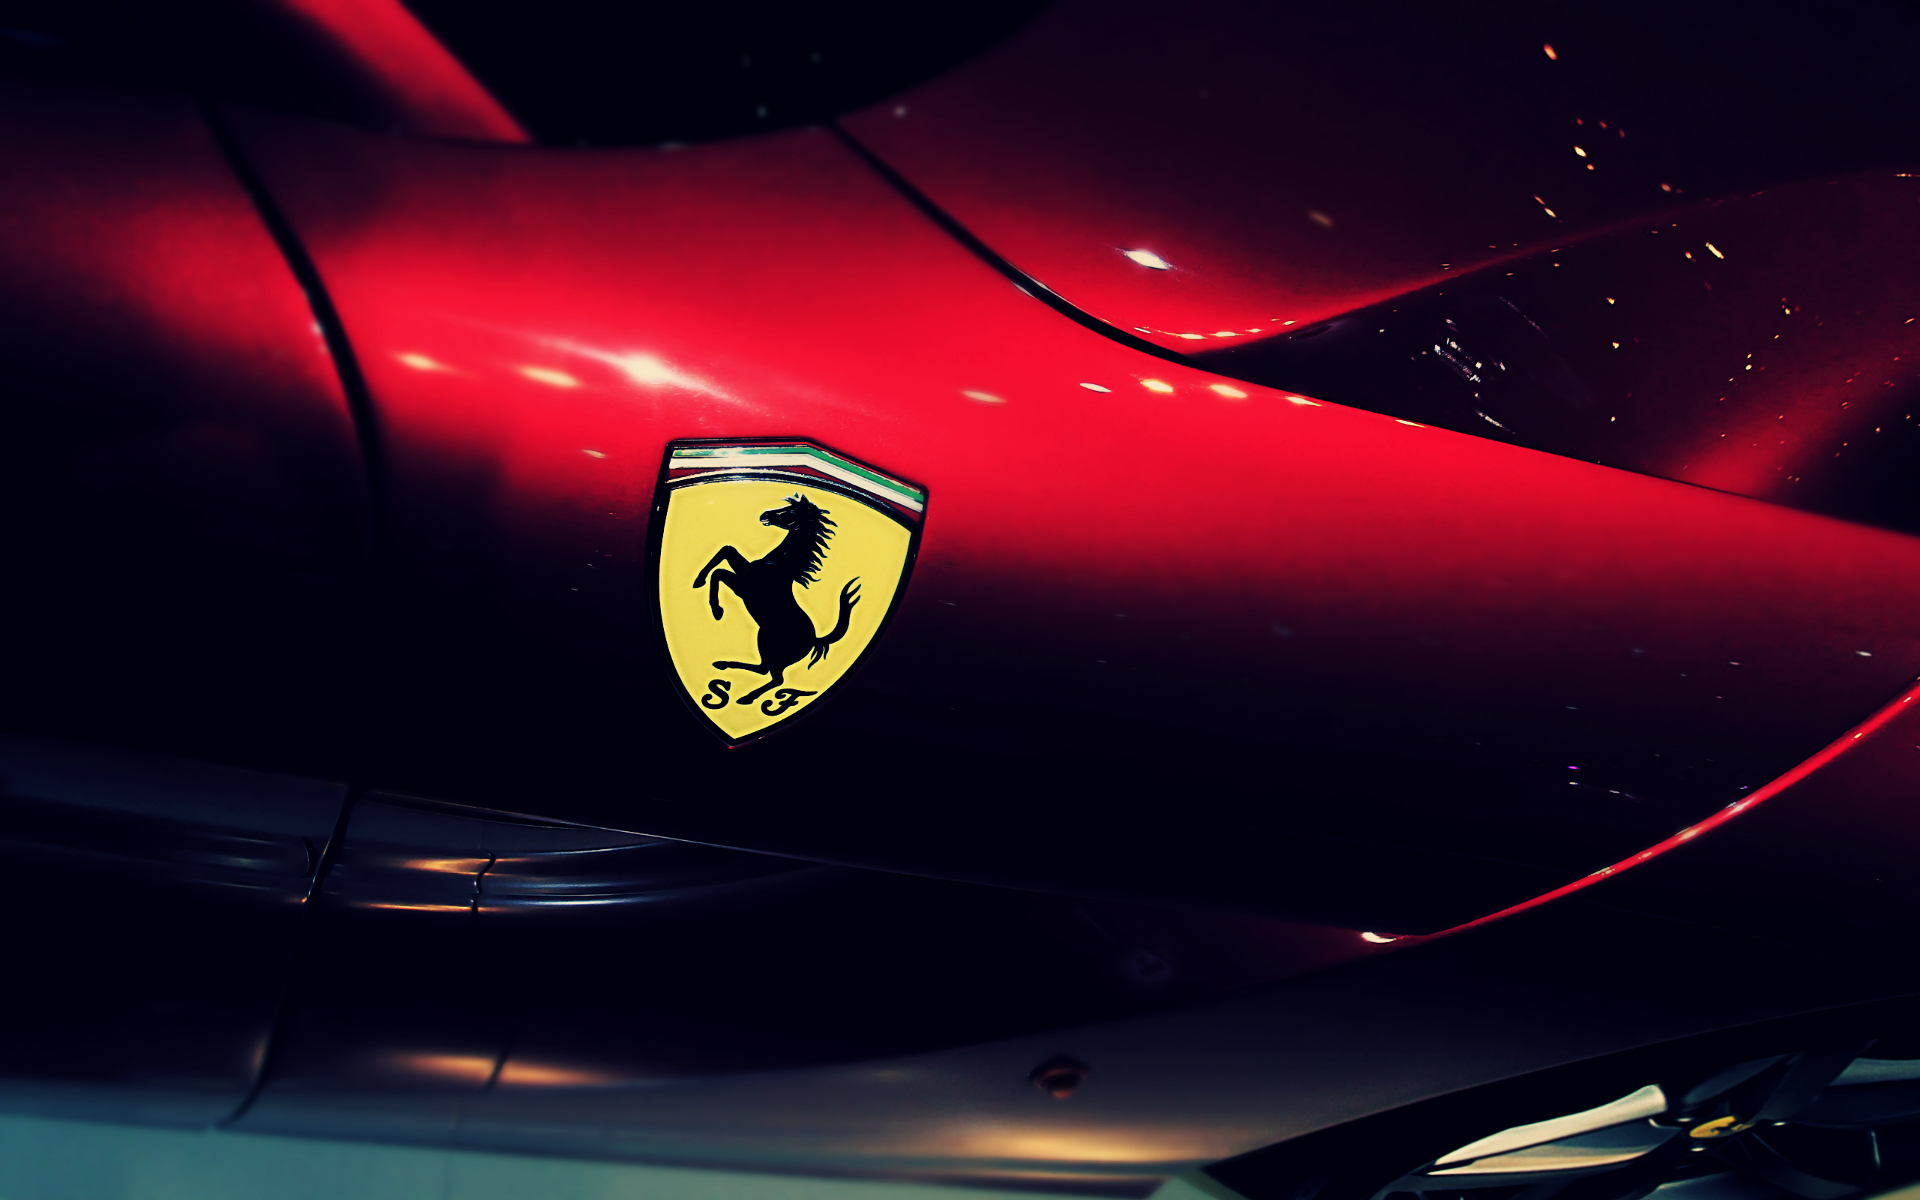 Ferrari Fire Art Wallpaper HD Widescreen Best Image Background